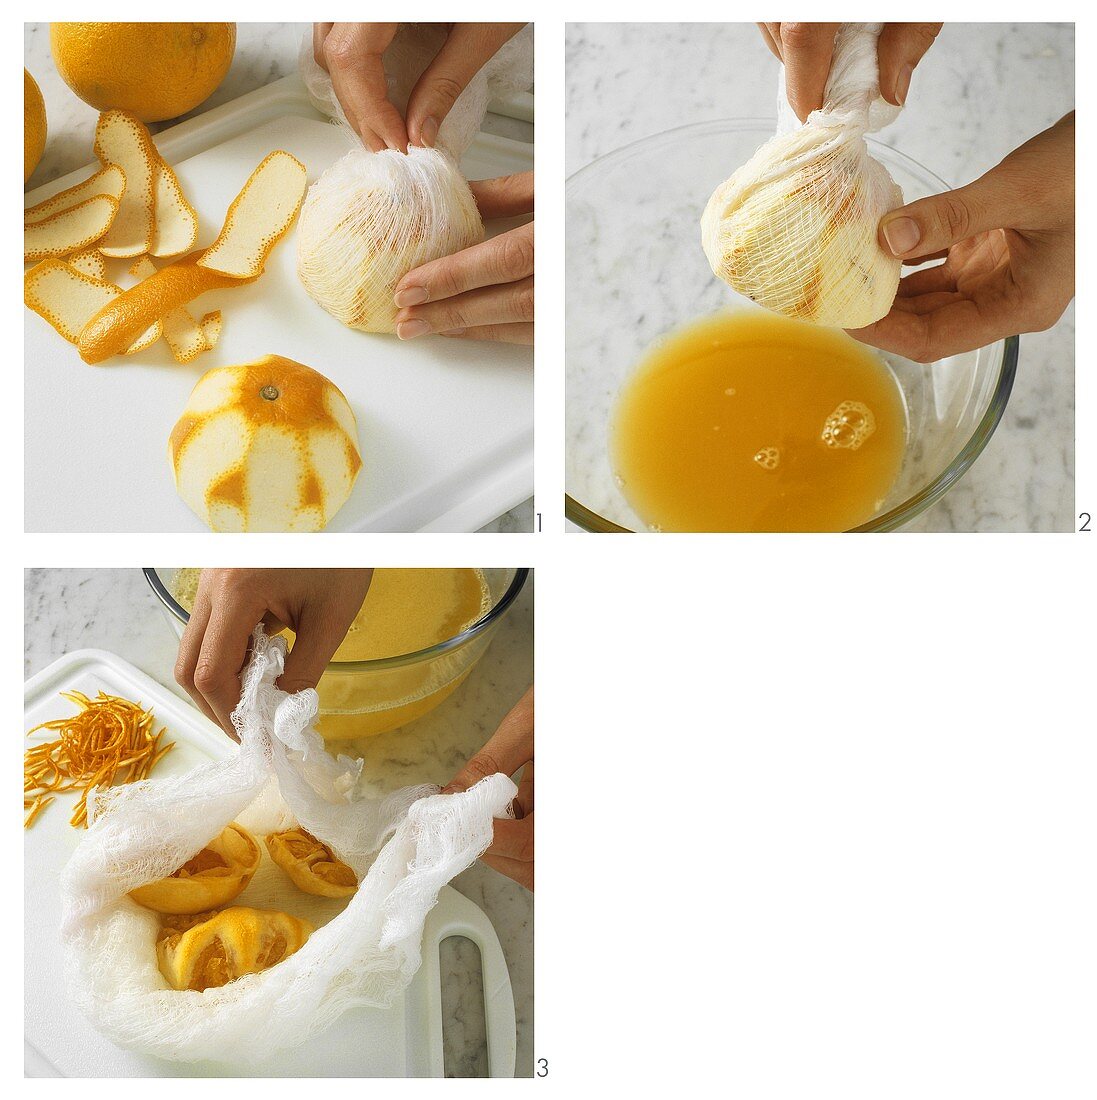 Making English orange marmalade